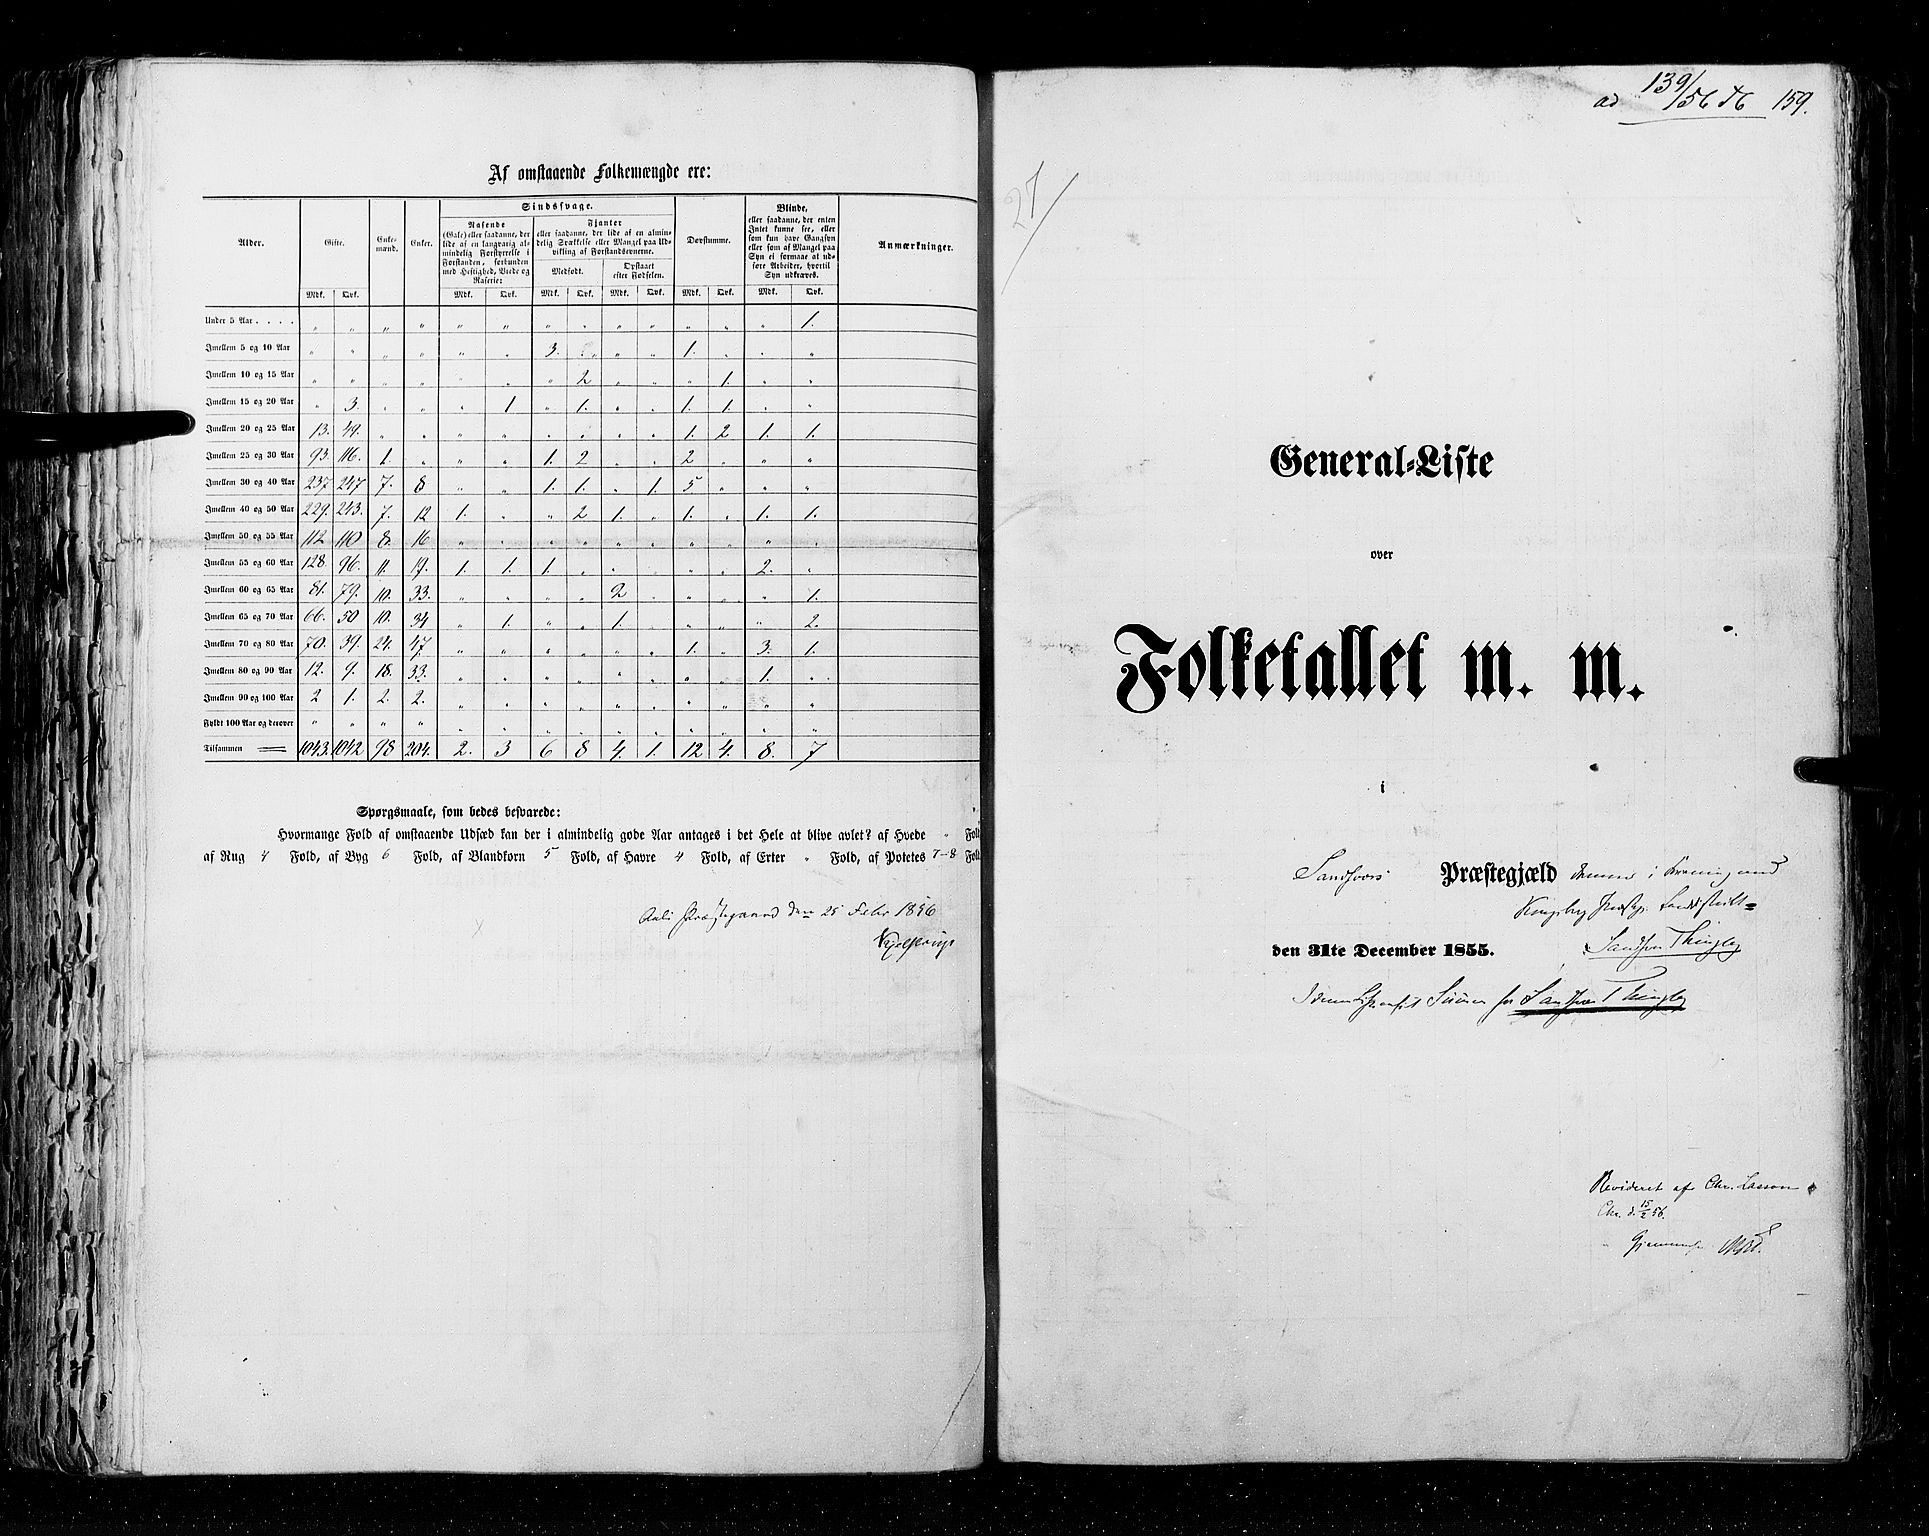 RA, Folketellingen 1855, bind 2: Kristians amt, Buskerud amt og Jarlsberg og Larvik amt, 1855, s. 159